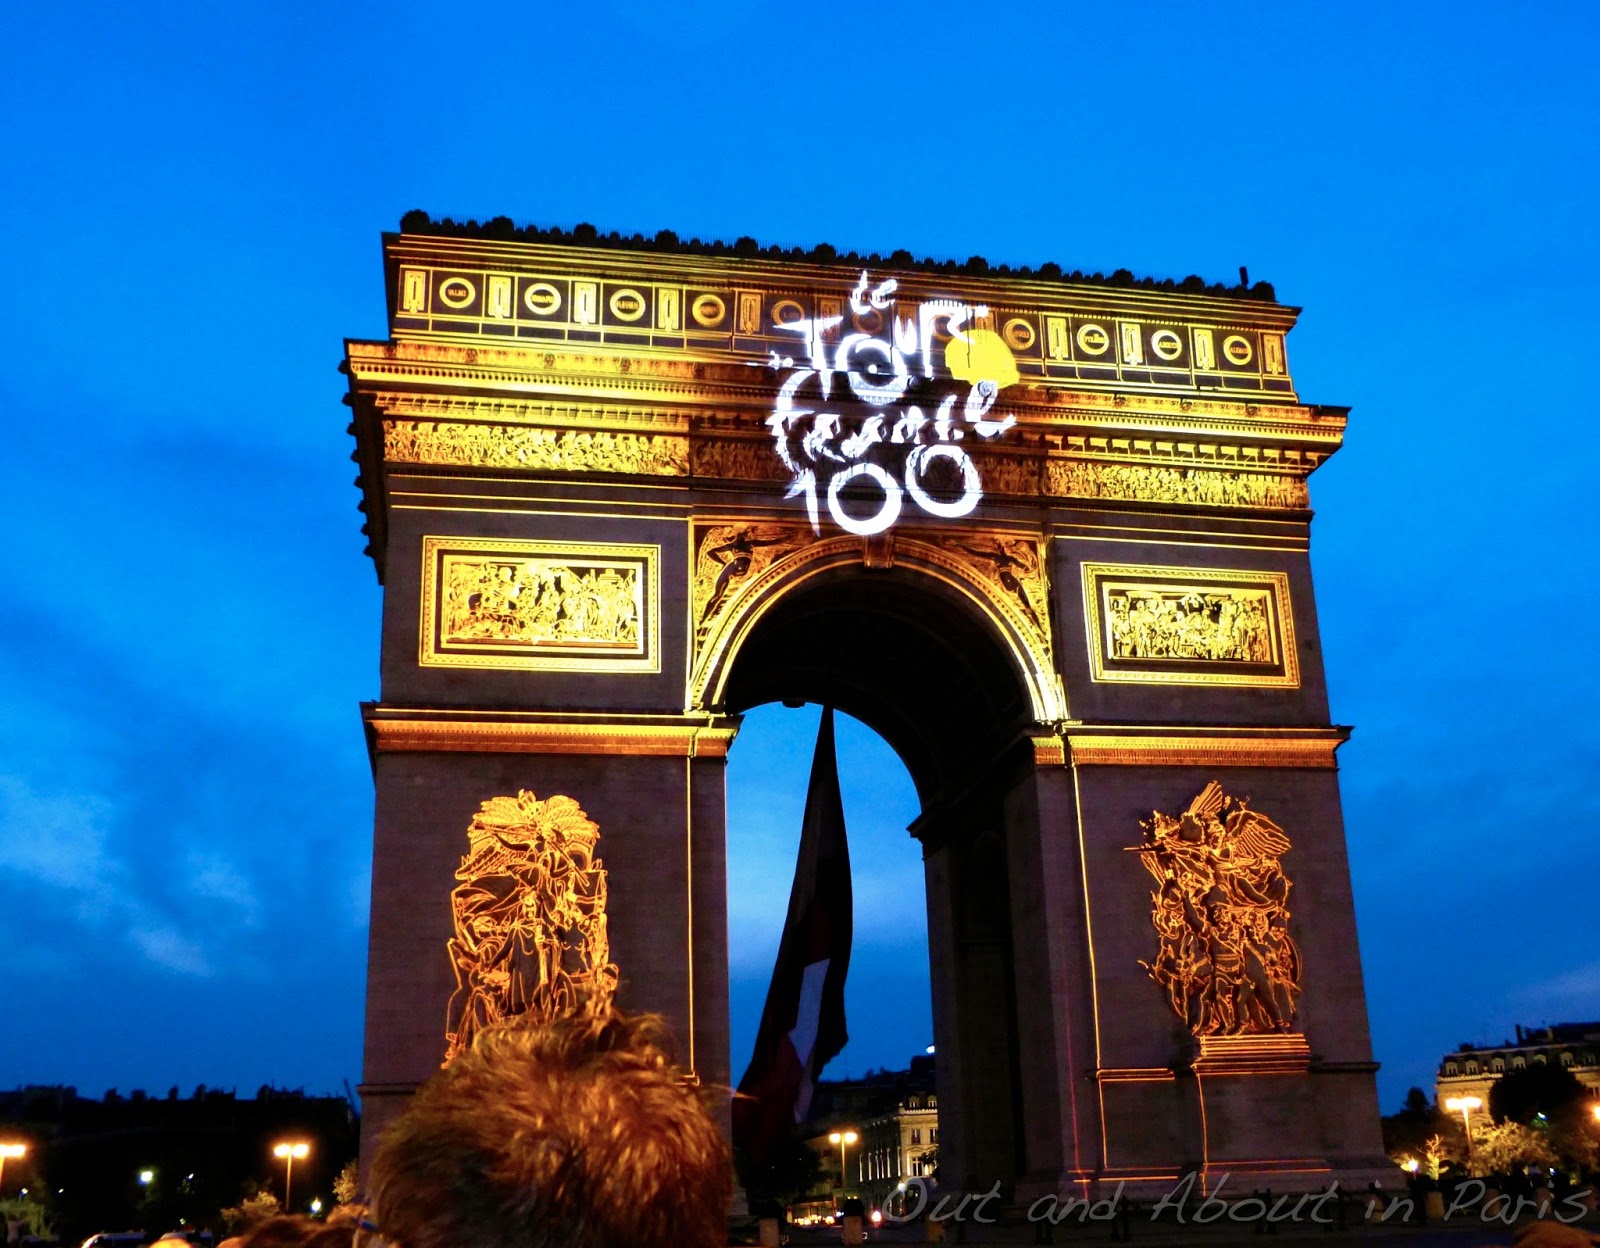 PARIS FRANCE JUNE 19 2015: Louis Vuitton Shopfront On The Champs